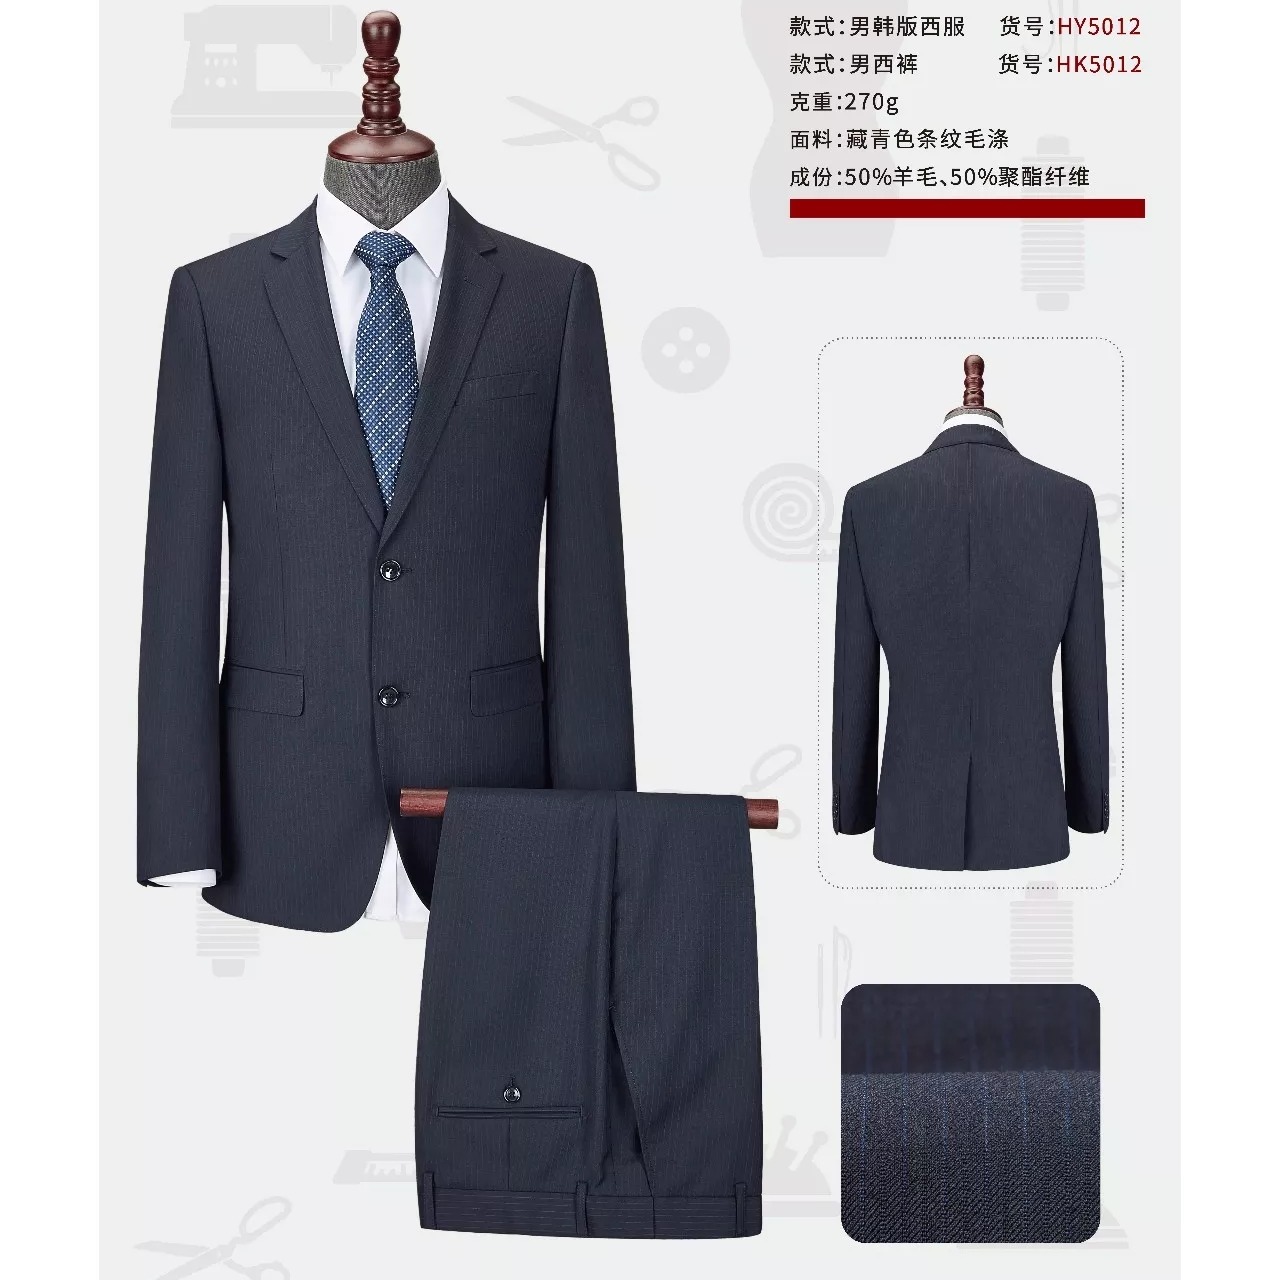 款式新颖 设计时尚 西安西服厂家定做 男式西服套装 西安职业西装5